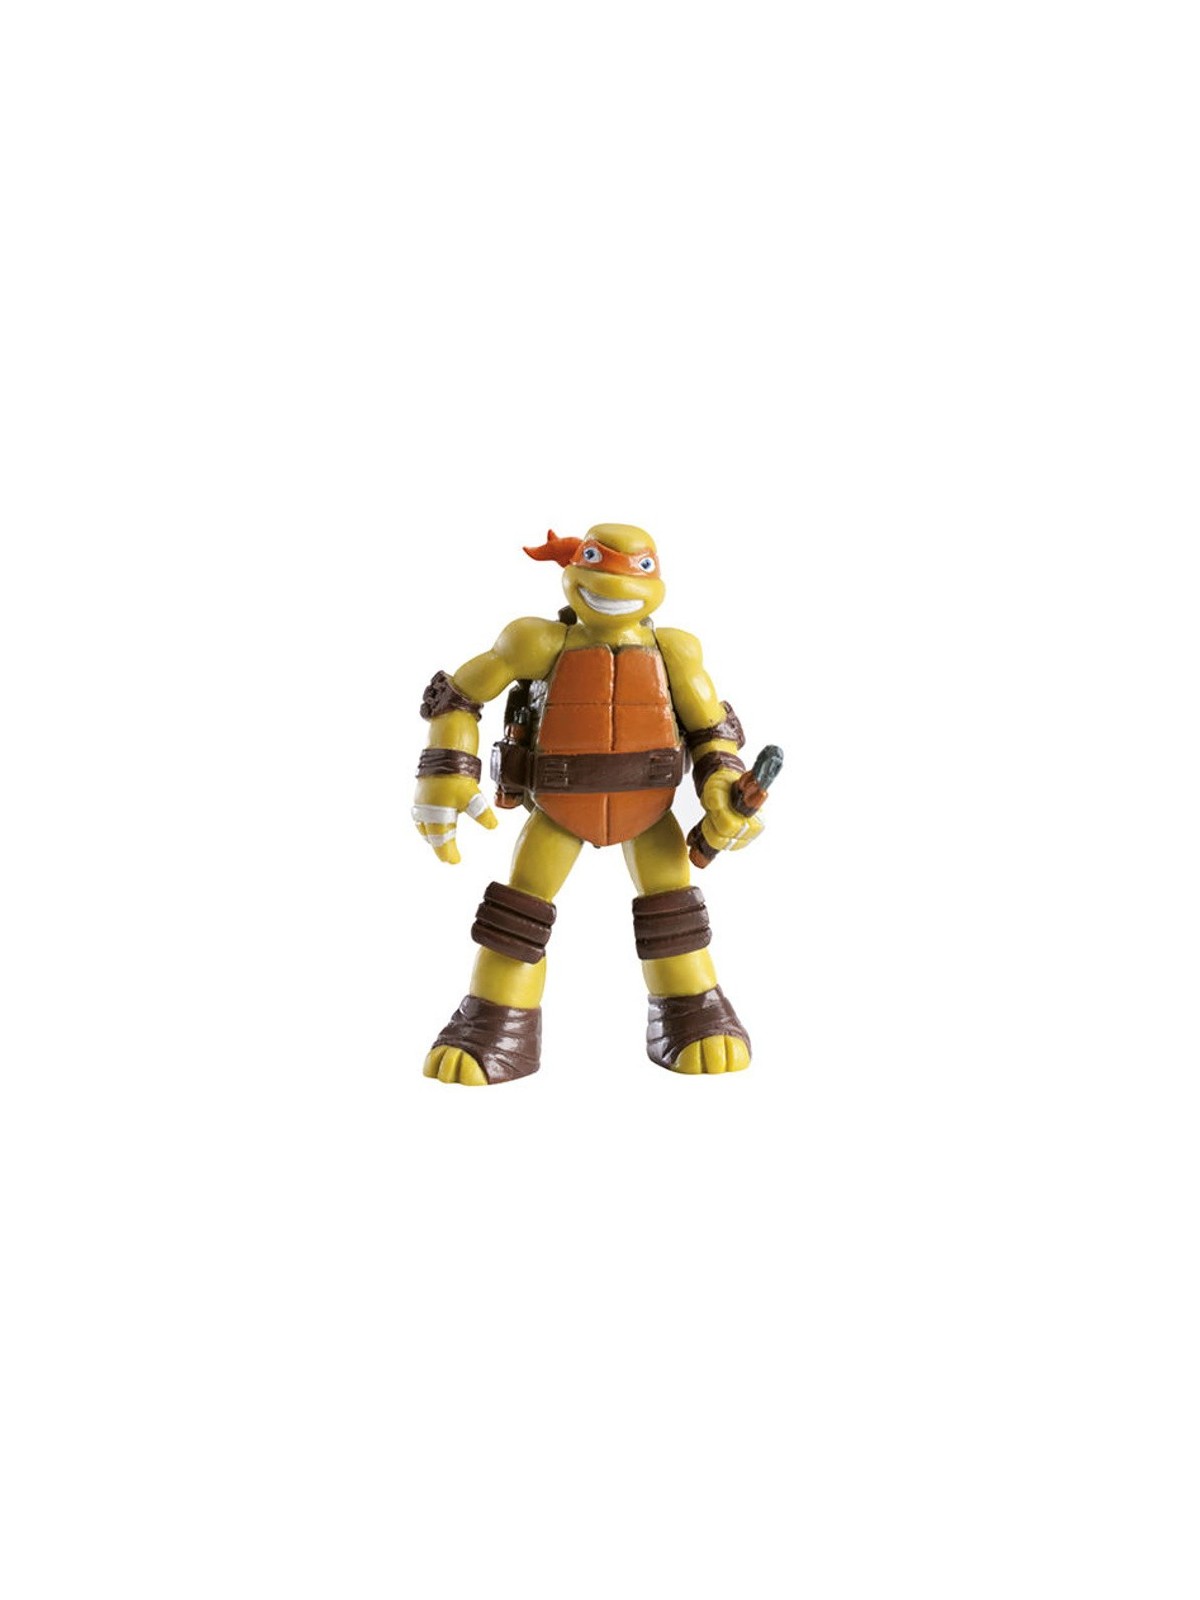 Dekora - Figure Ninja Turtles - Michelangelo - orange